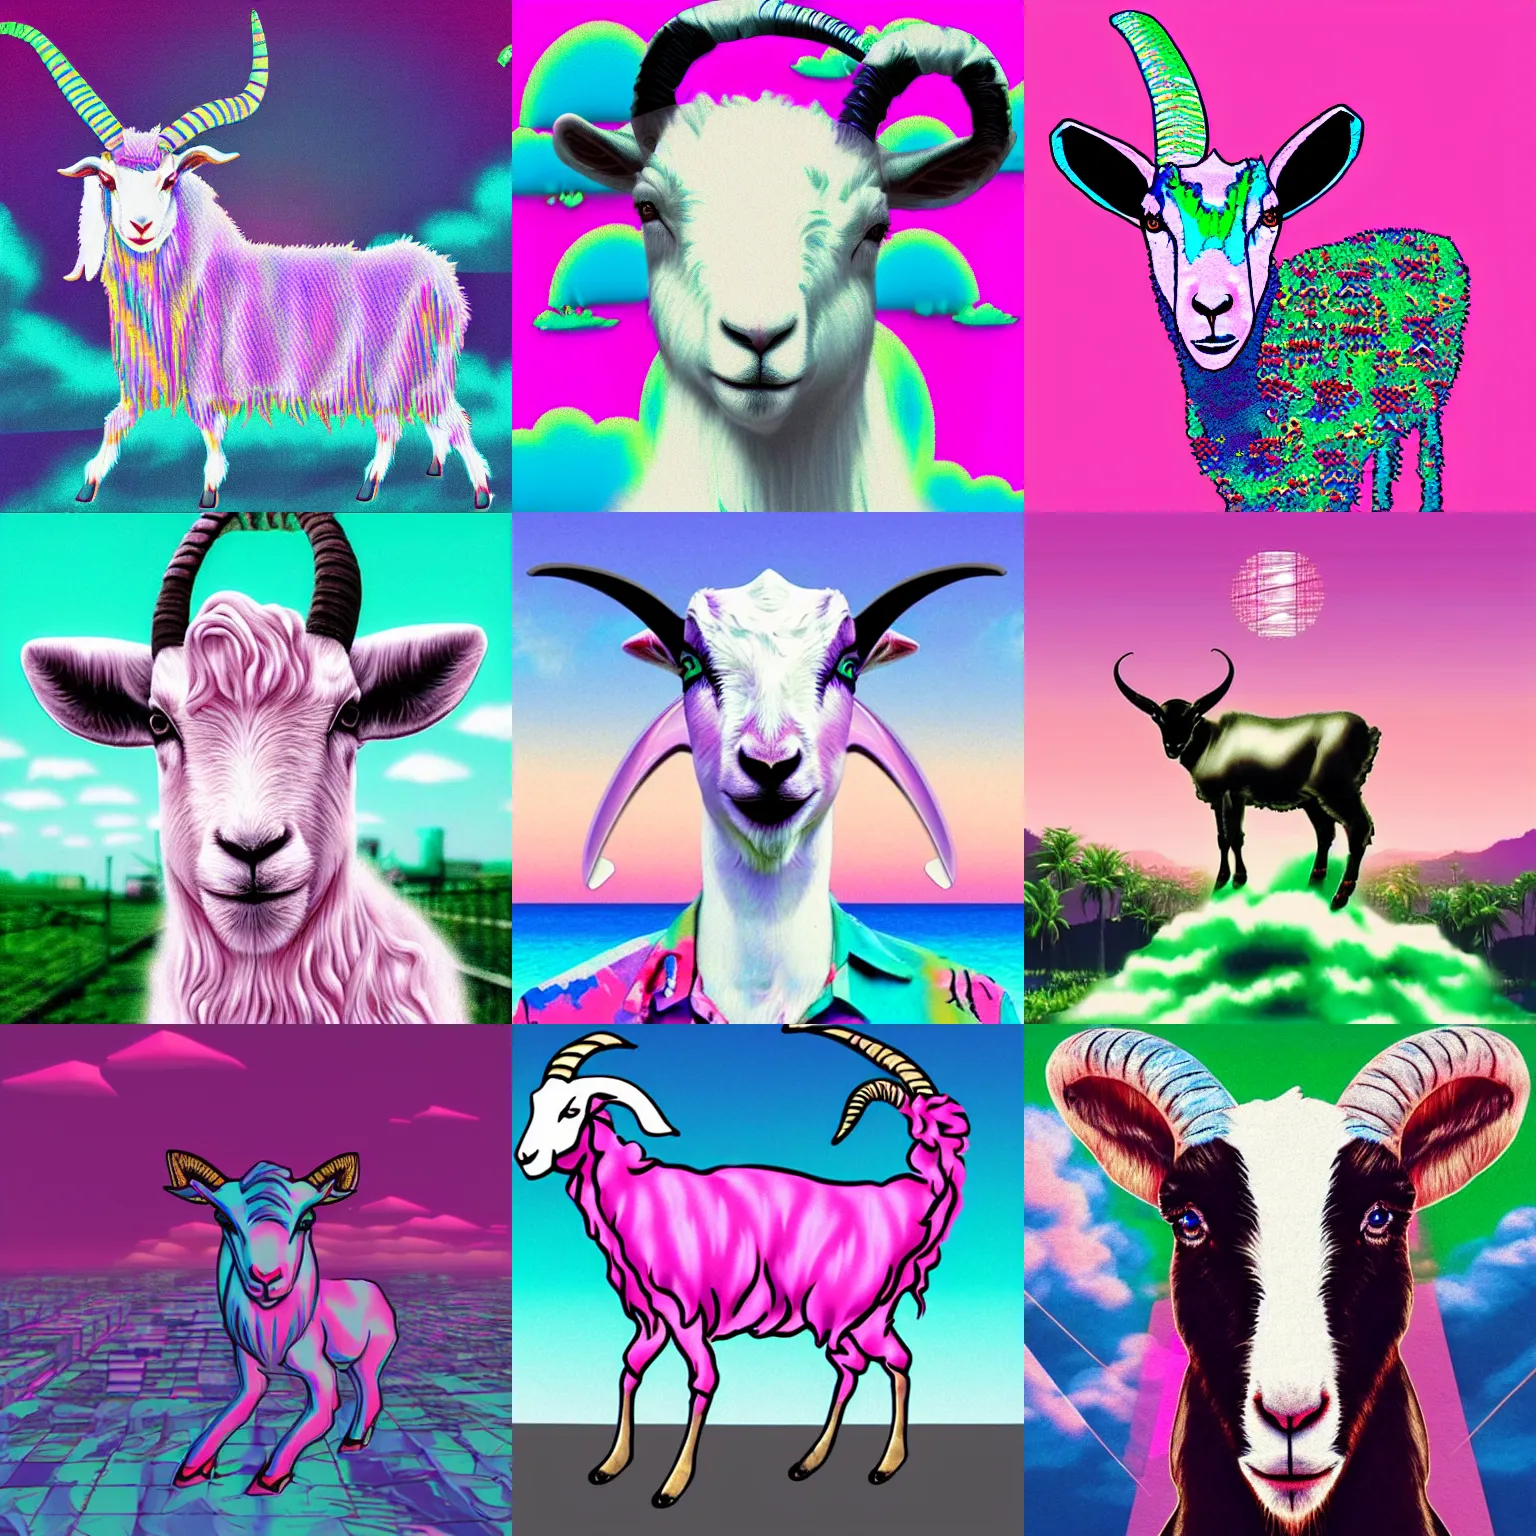 Prompt: vaporwave goat